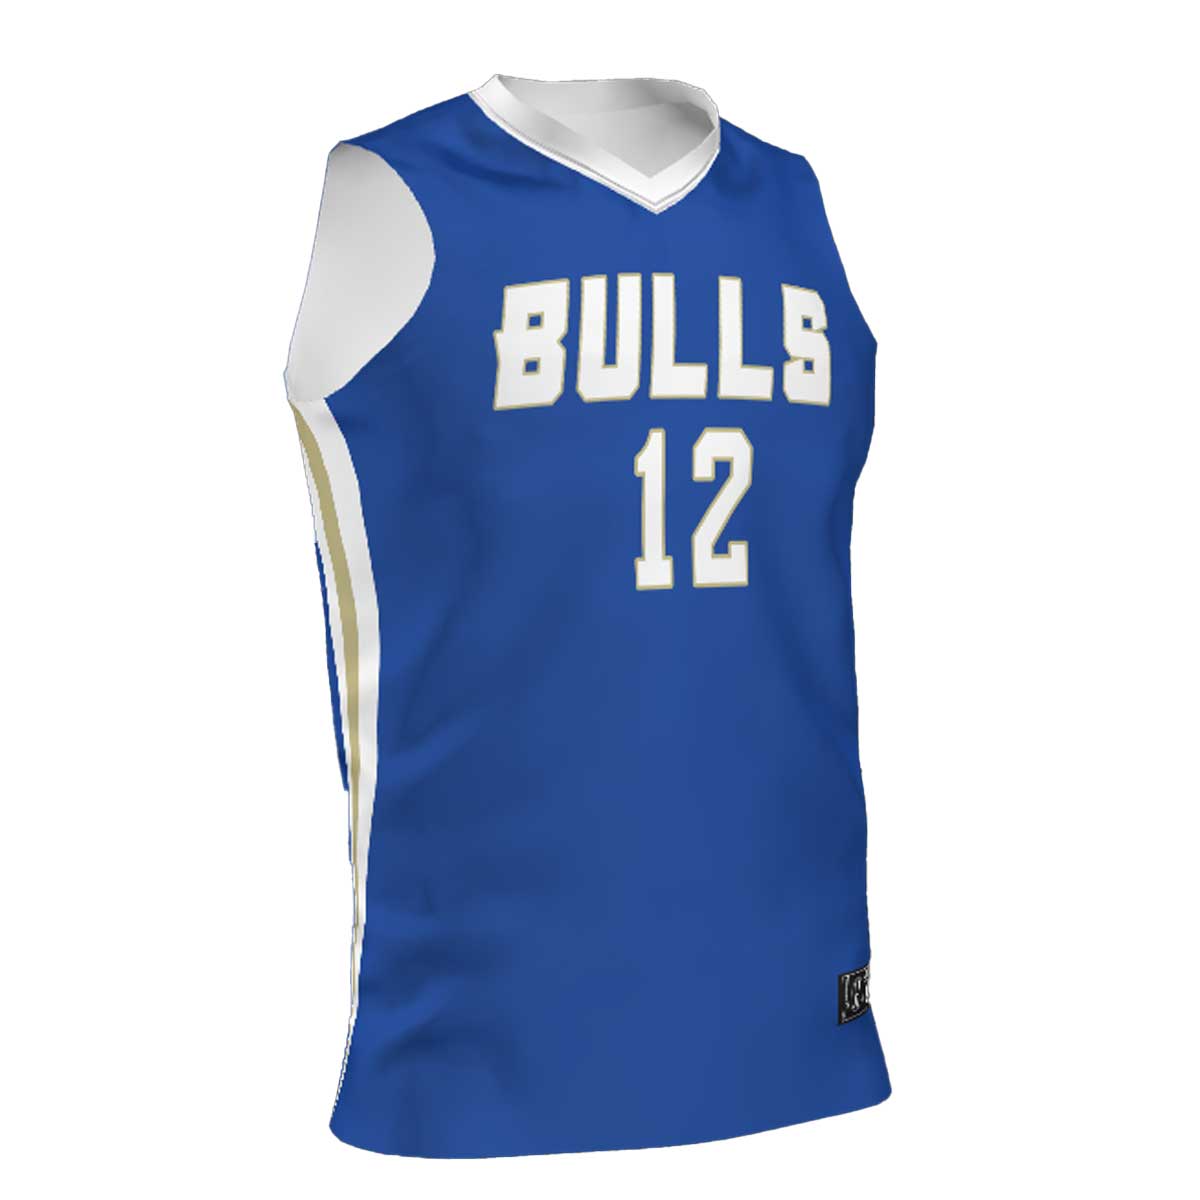 Bulls Basketball Jersey